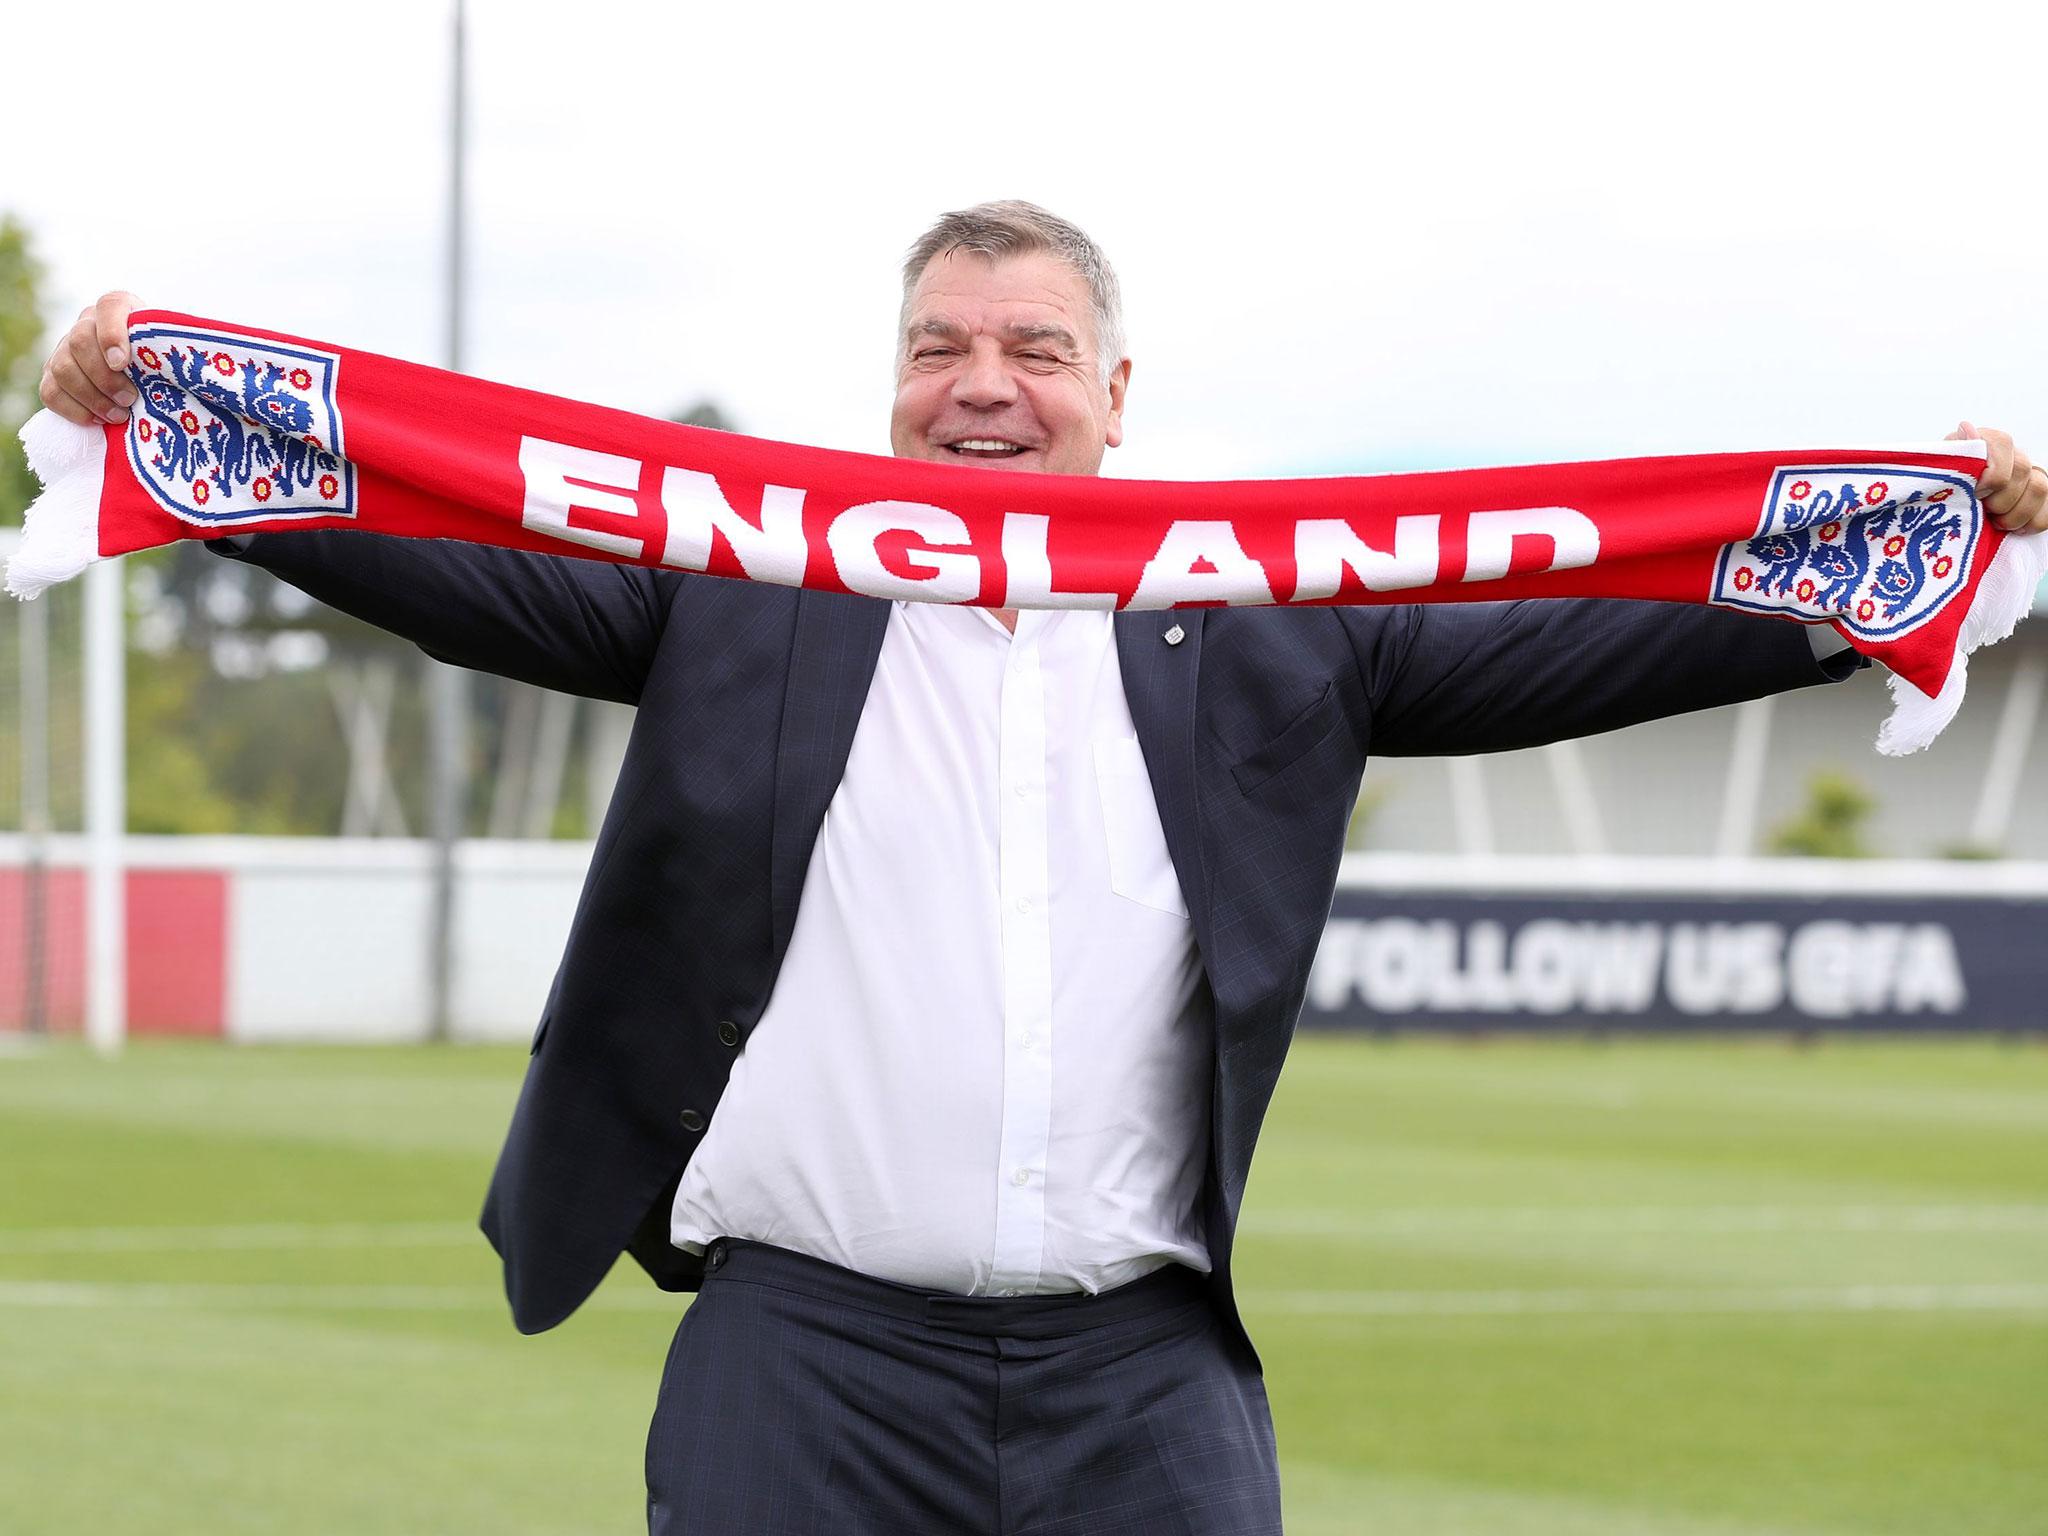 Tthe England football team, Sam Allardyce poses for a photograph with an England scarf